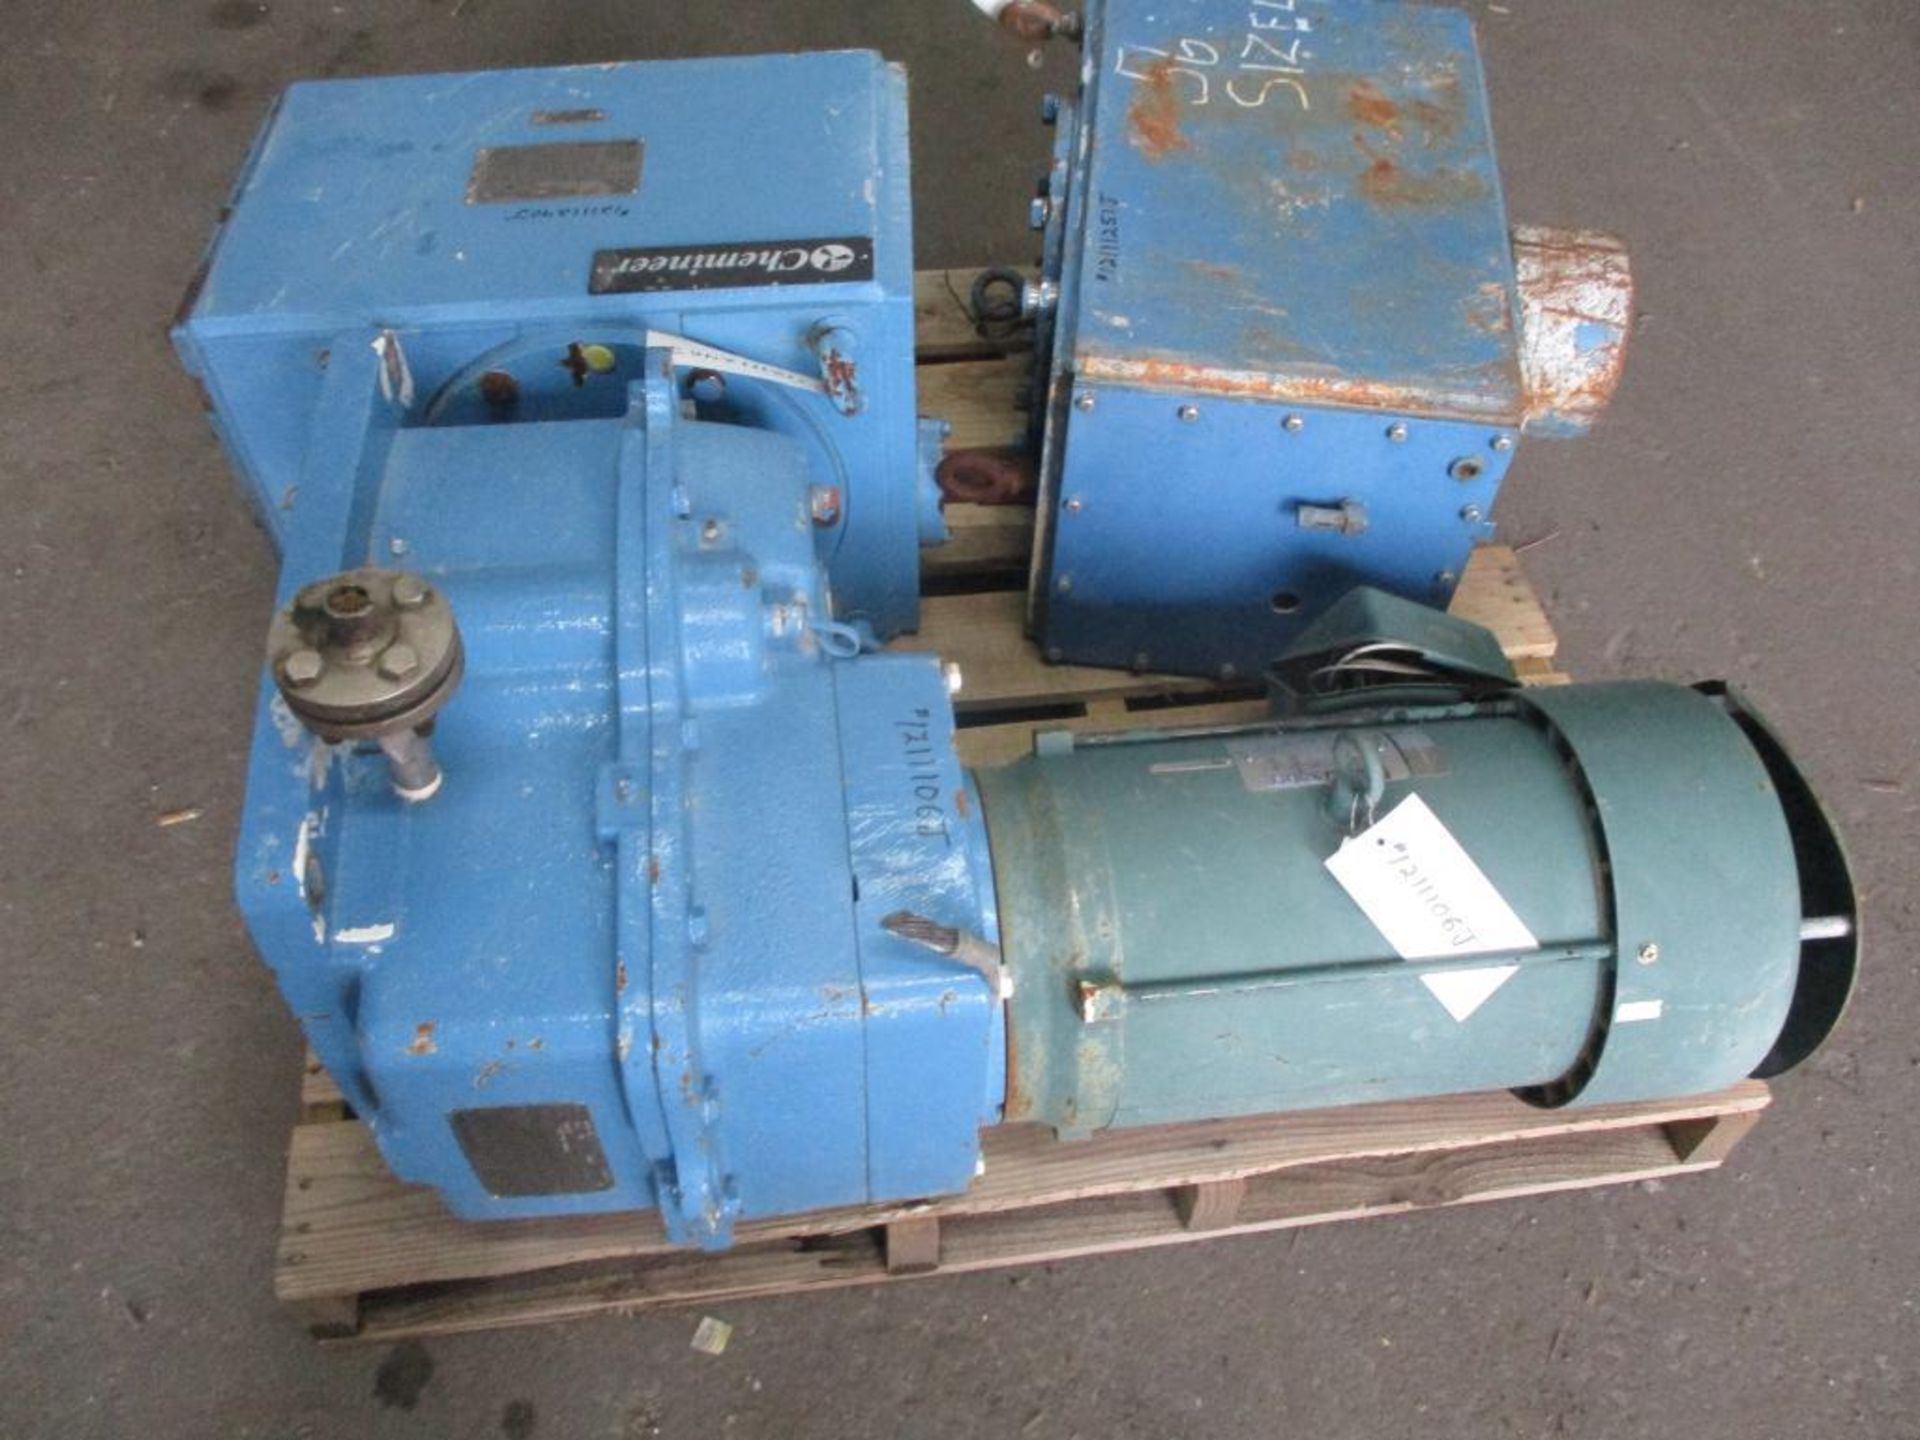 (Used) Chemineer 4GTD-15 Mixer, 15HP Motor, (Used) (2) Chemineer 4HT Mixers - Image 2 of 4